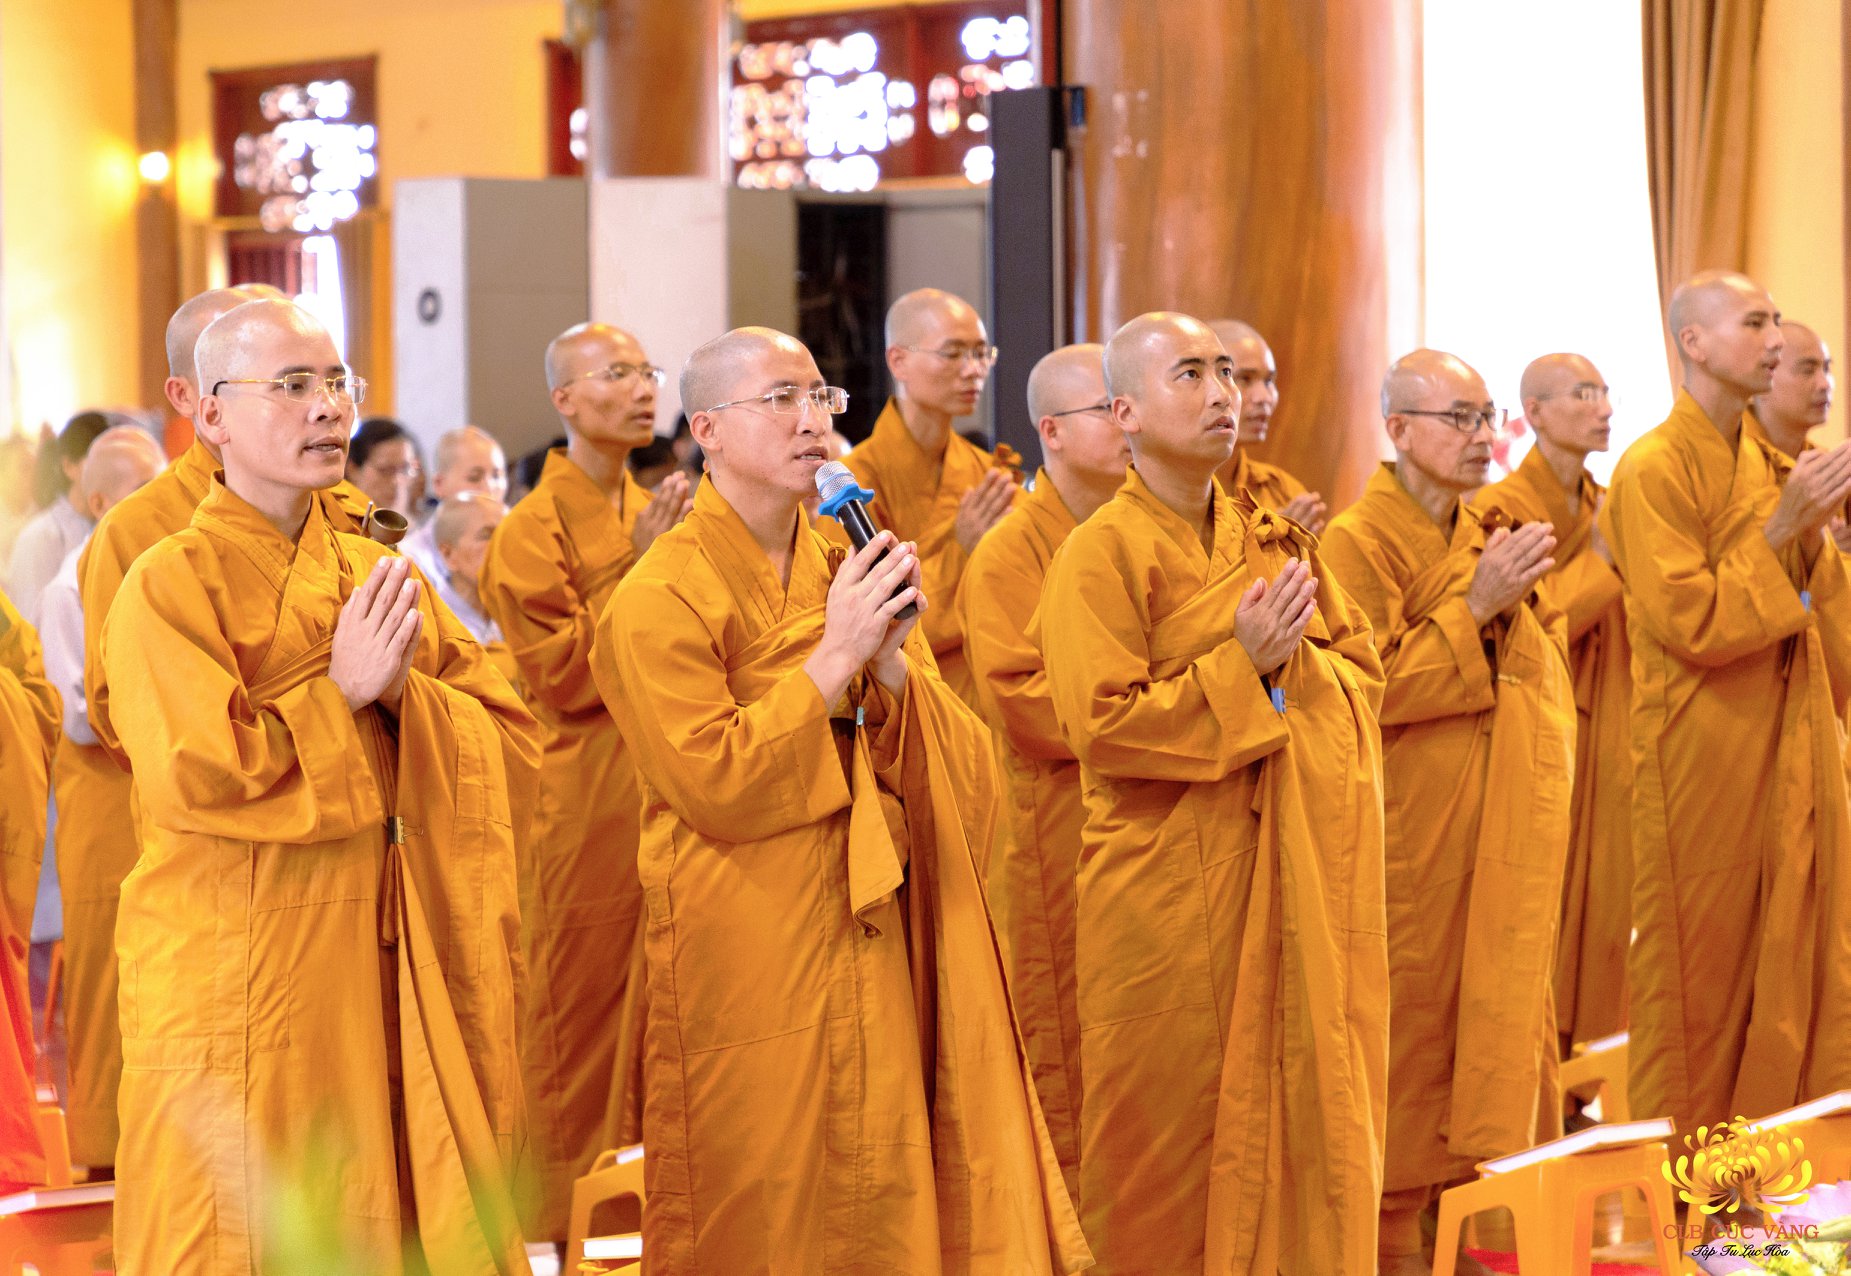 Chư Tăng chùa Ba Vàng tác lễ khai đàn cho các Phật tử tu tập theo 3 tháng an cư kiết hạ của chư Tăng